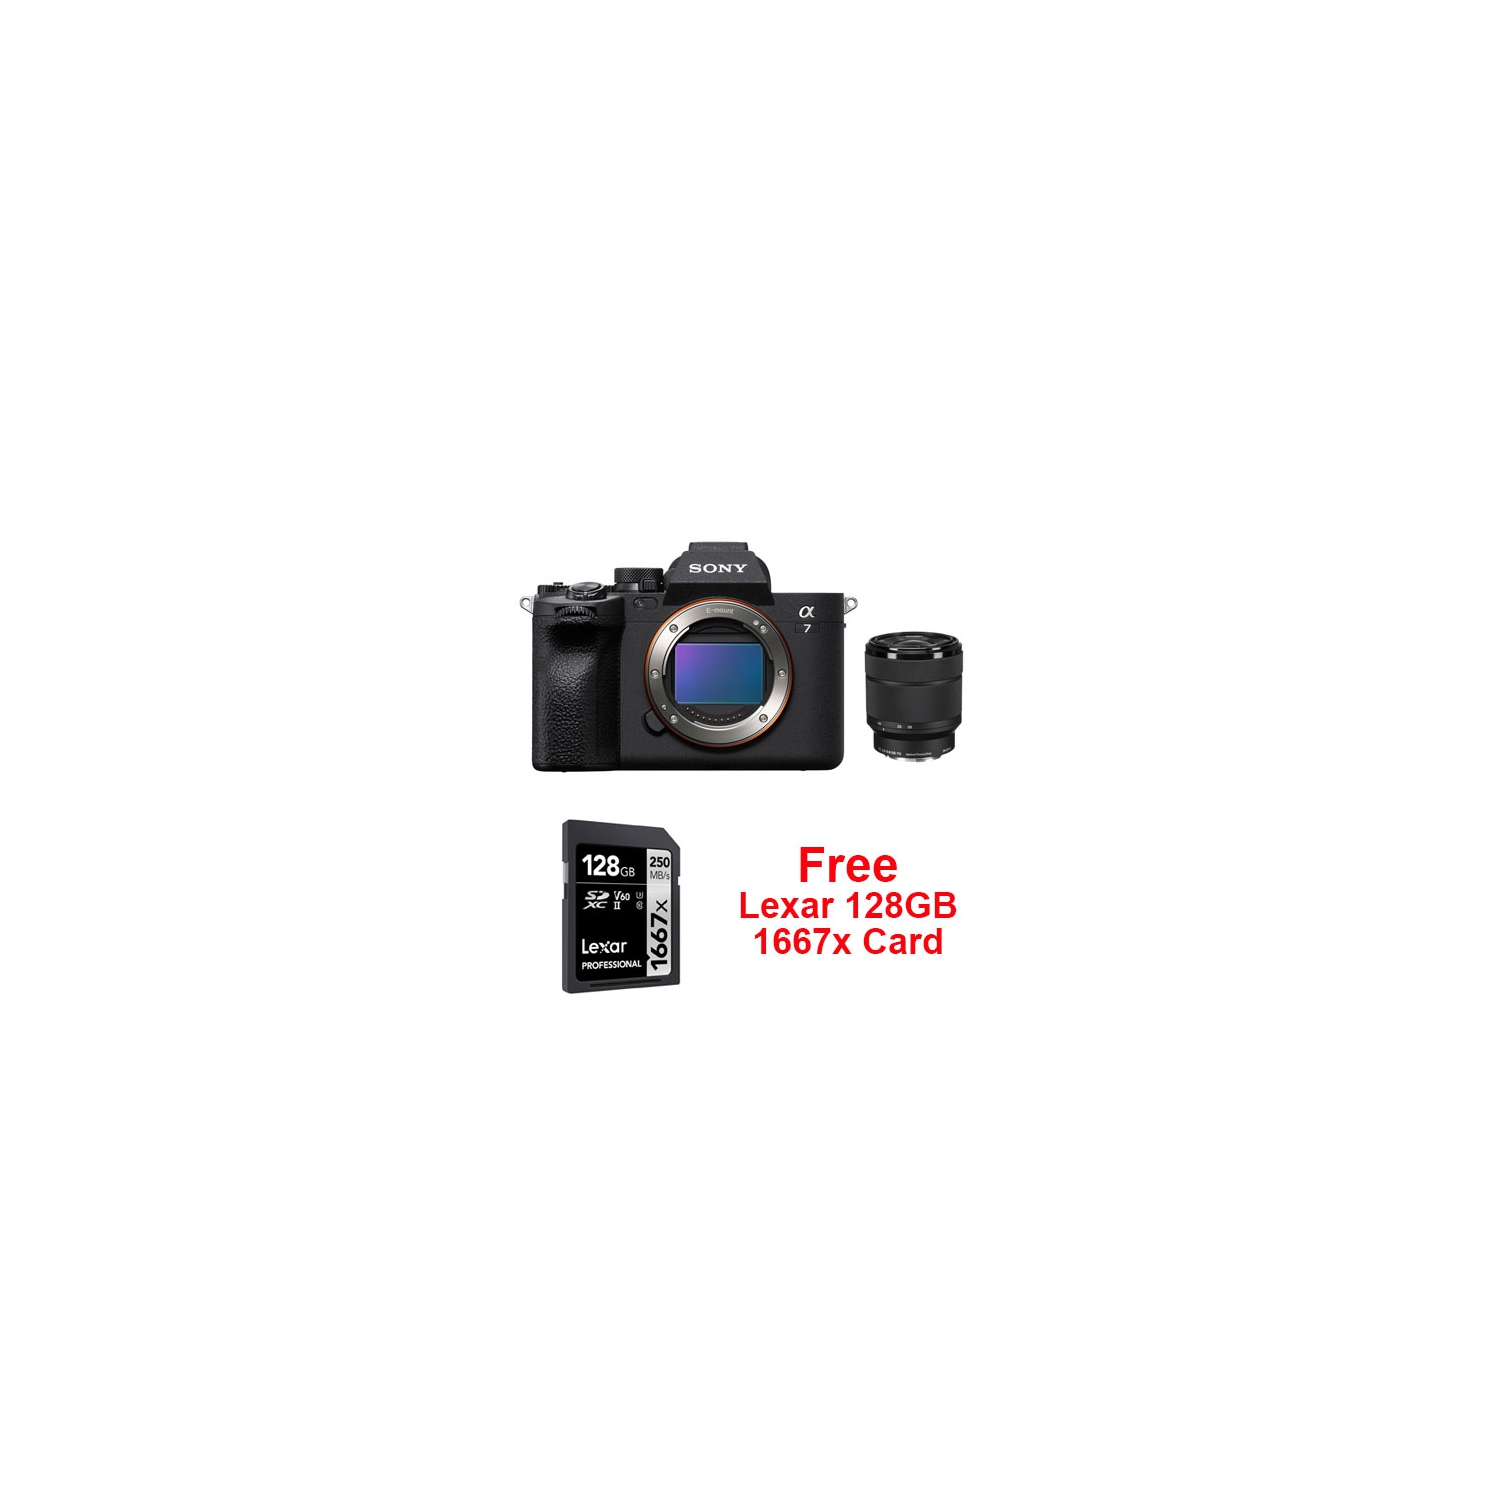 Sony Alpha a7 IV Camera with 28-70mm f3.5-5.6 + 128GB 1667x Lexar Pro Card